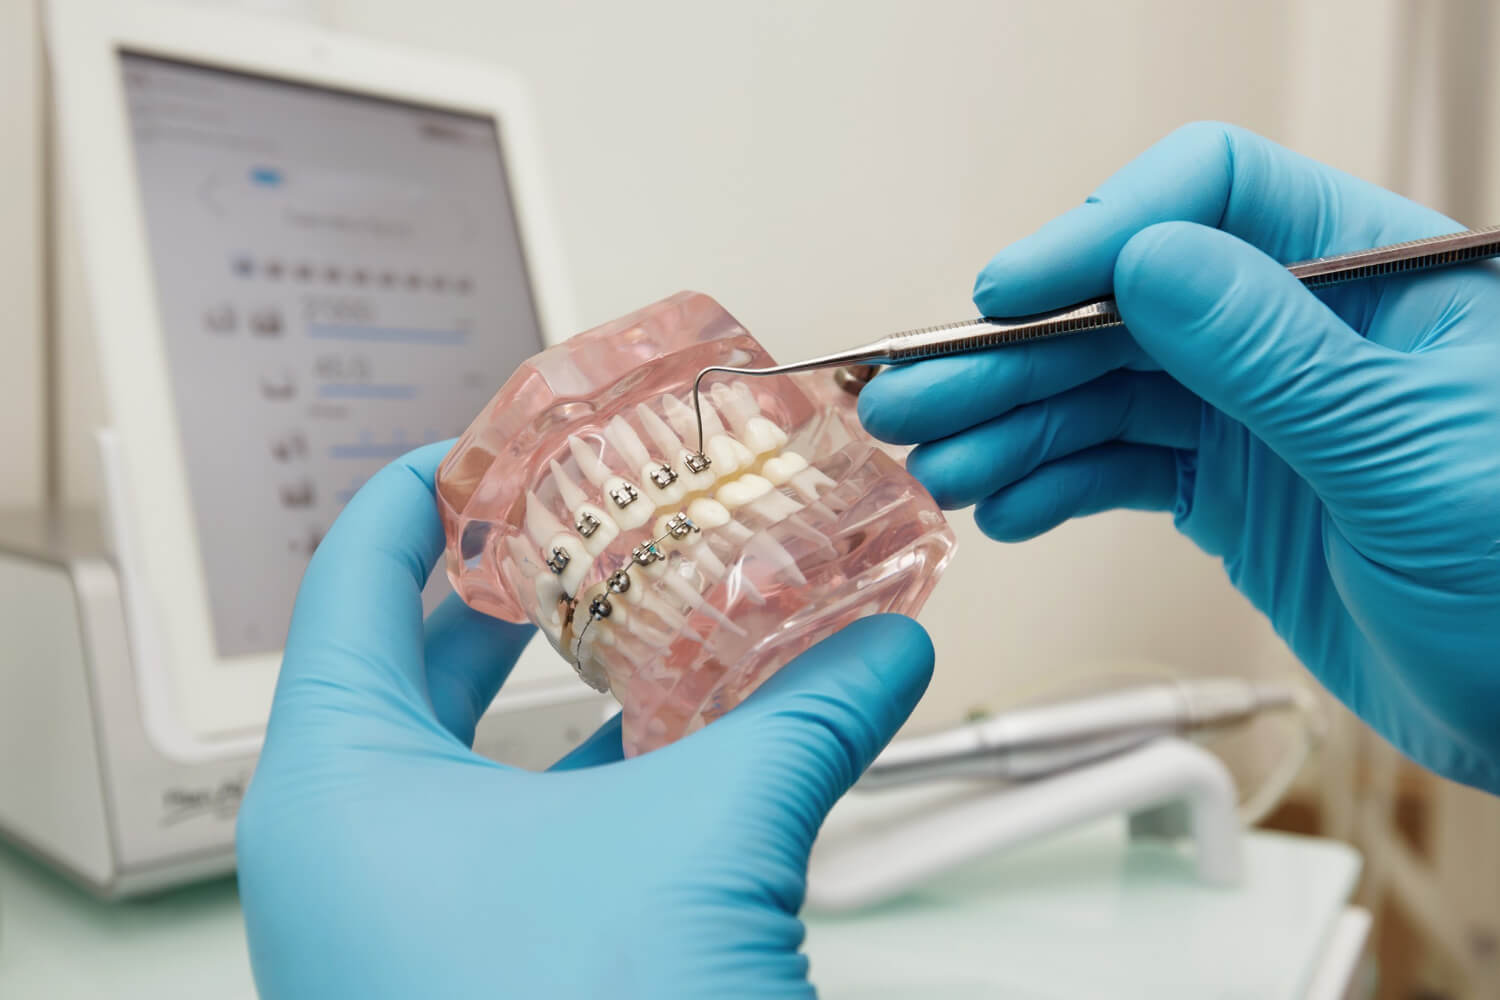 aparaty ortodontyczne zdjecie 2